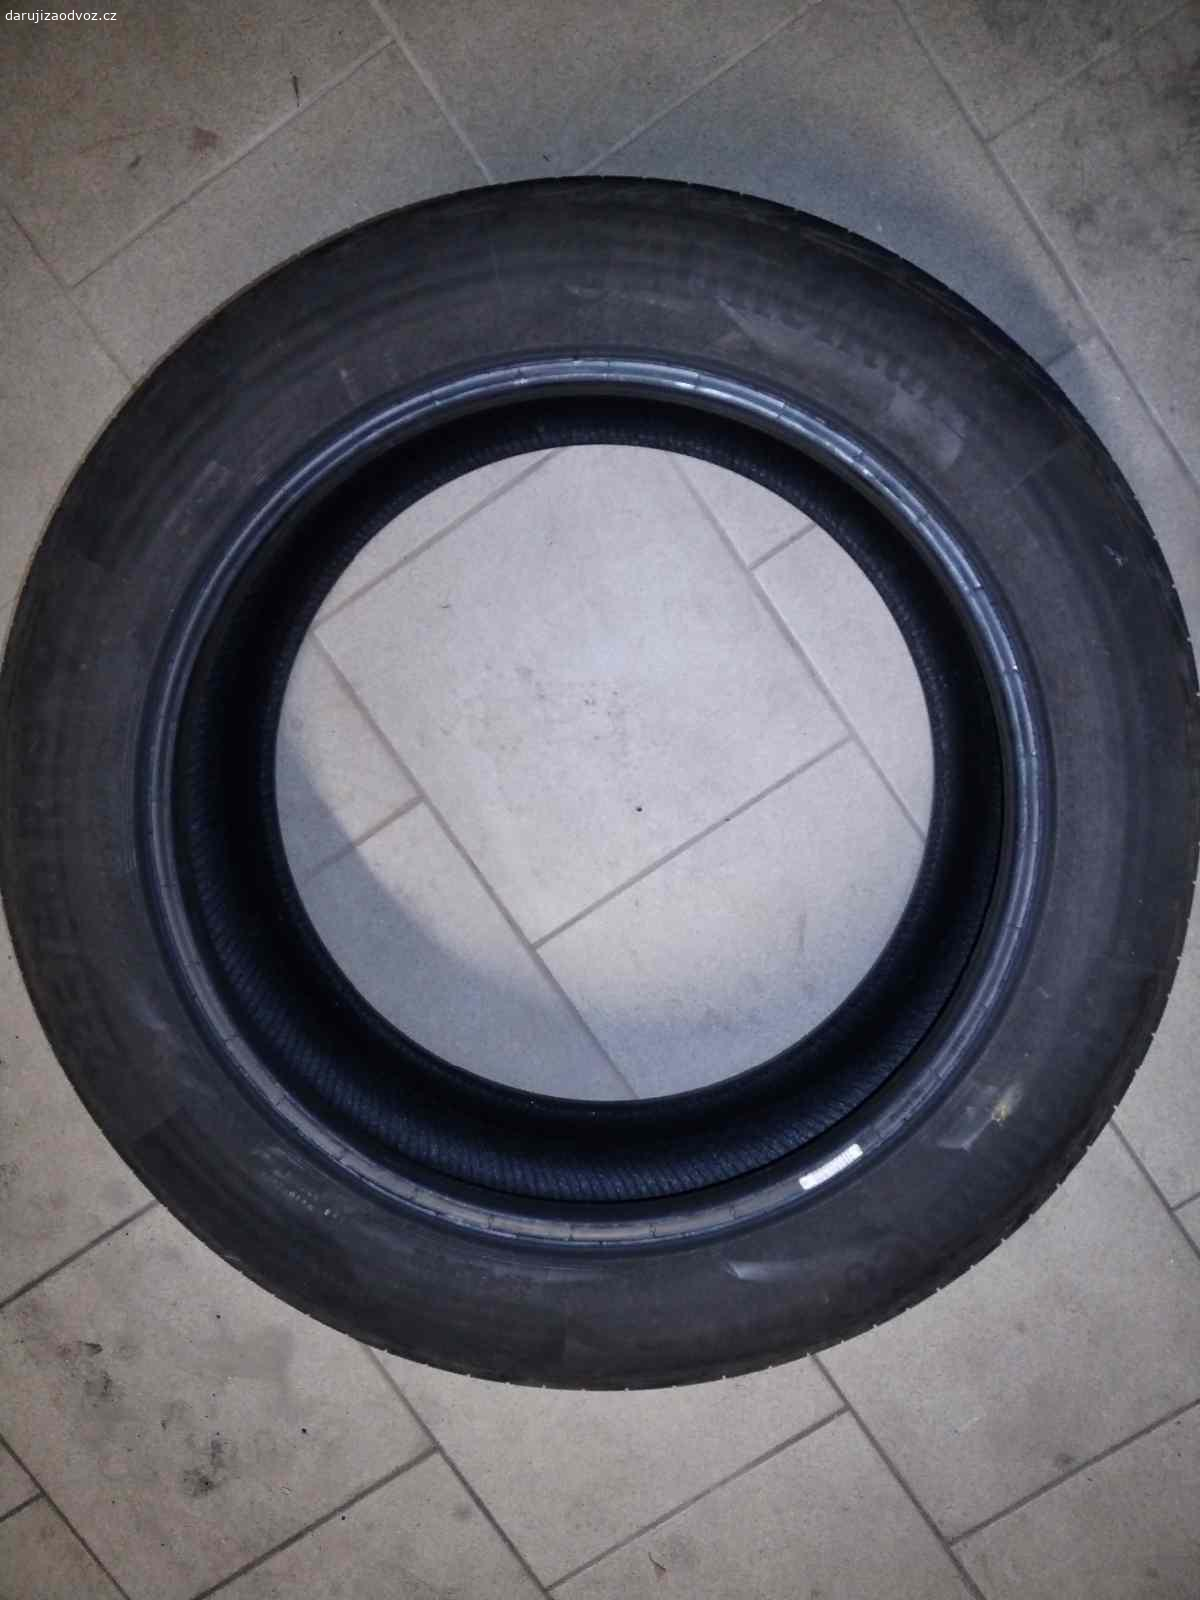 Pneu Continental. Daruji 1 ks letní pneu Continental Premium Contact 3 o rozměru 235/50 R19 V. Hloubka vzorku cca 4 mm, na dojetí, bezvadná, zbyla po výměně páru pneu po defektu